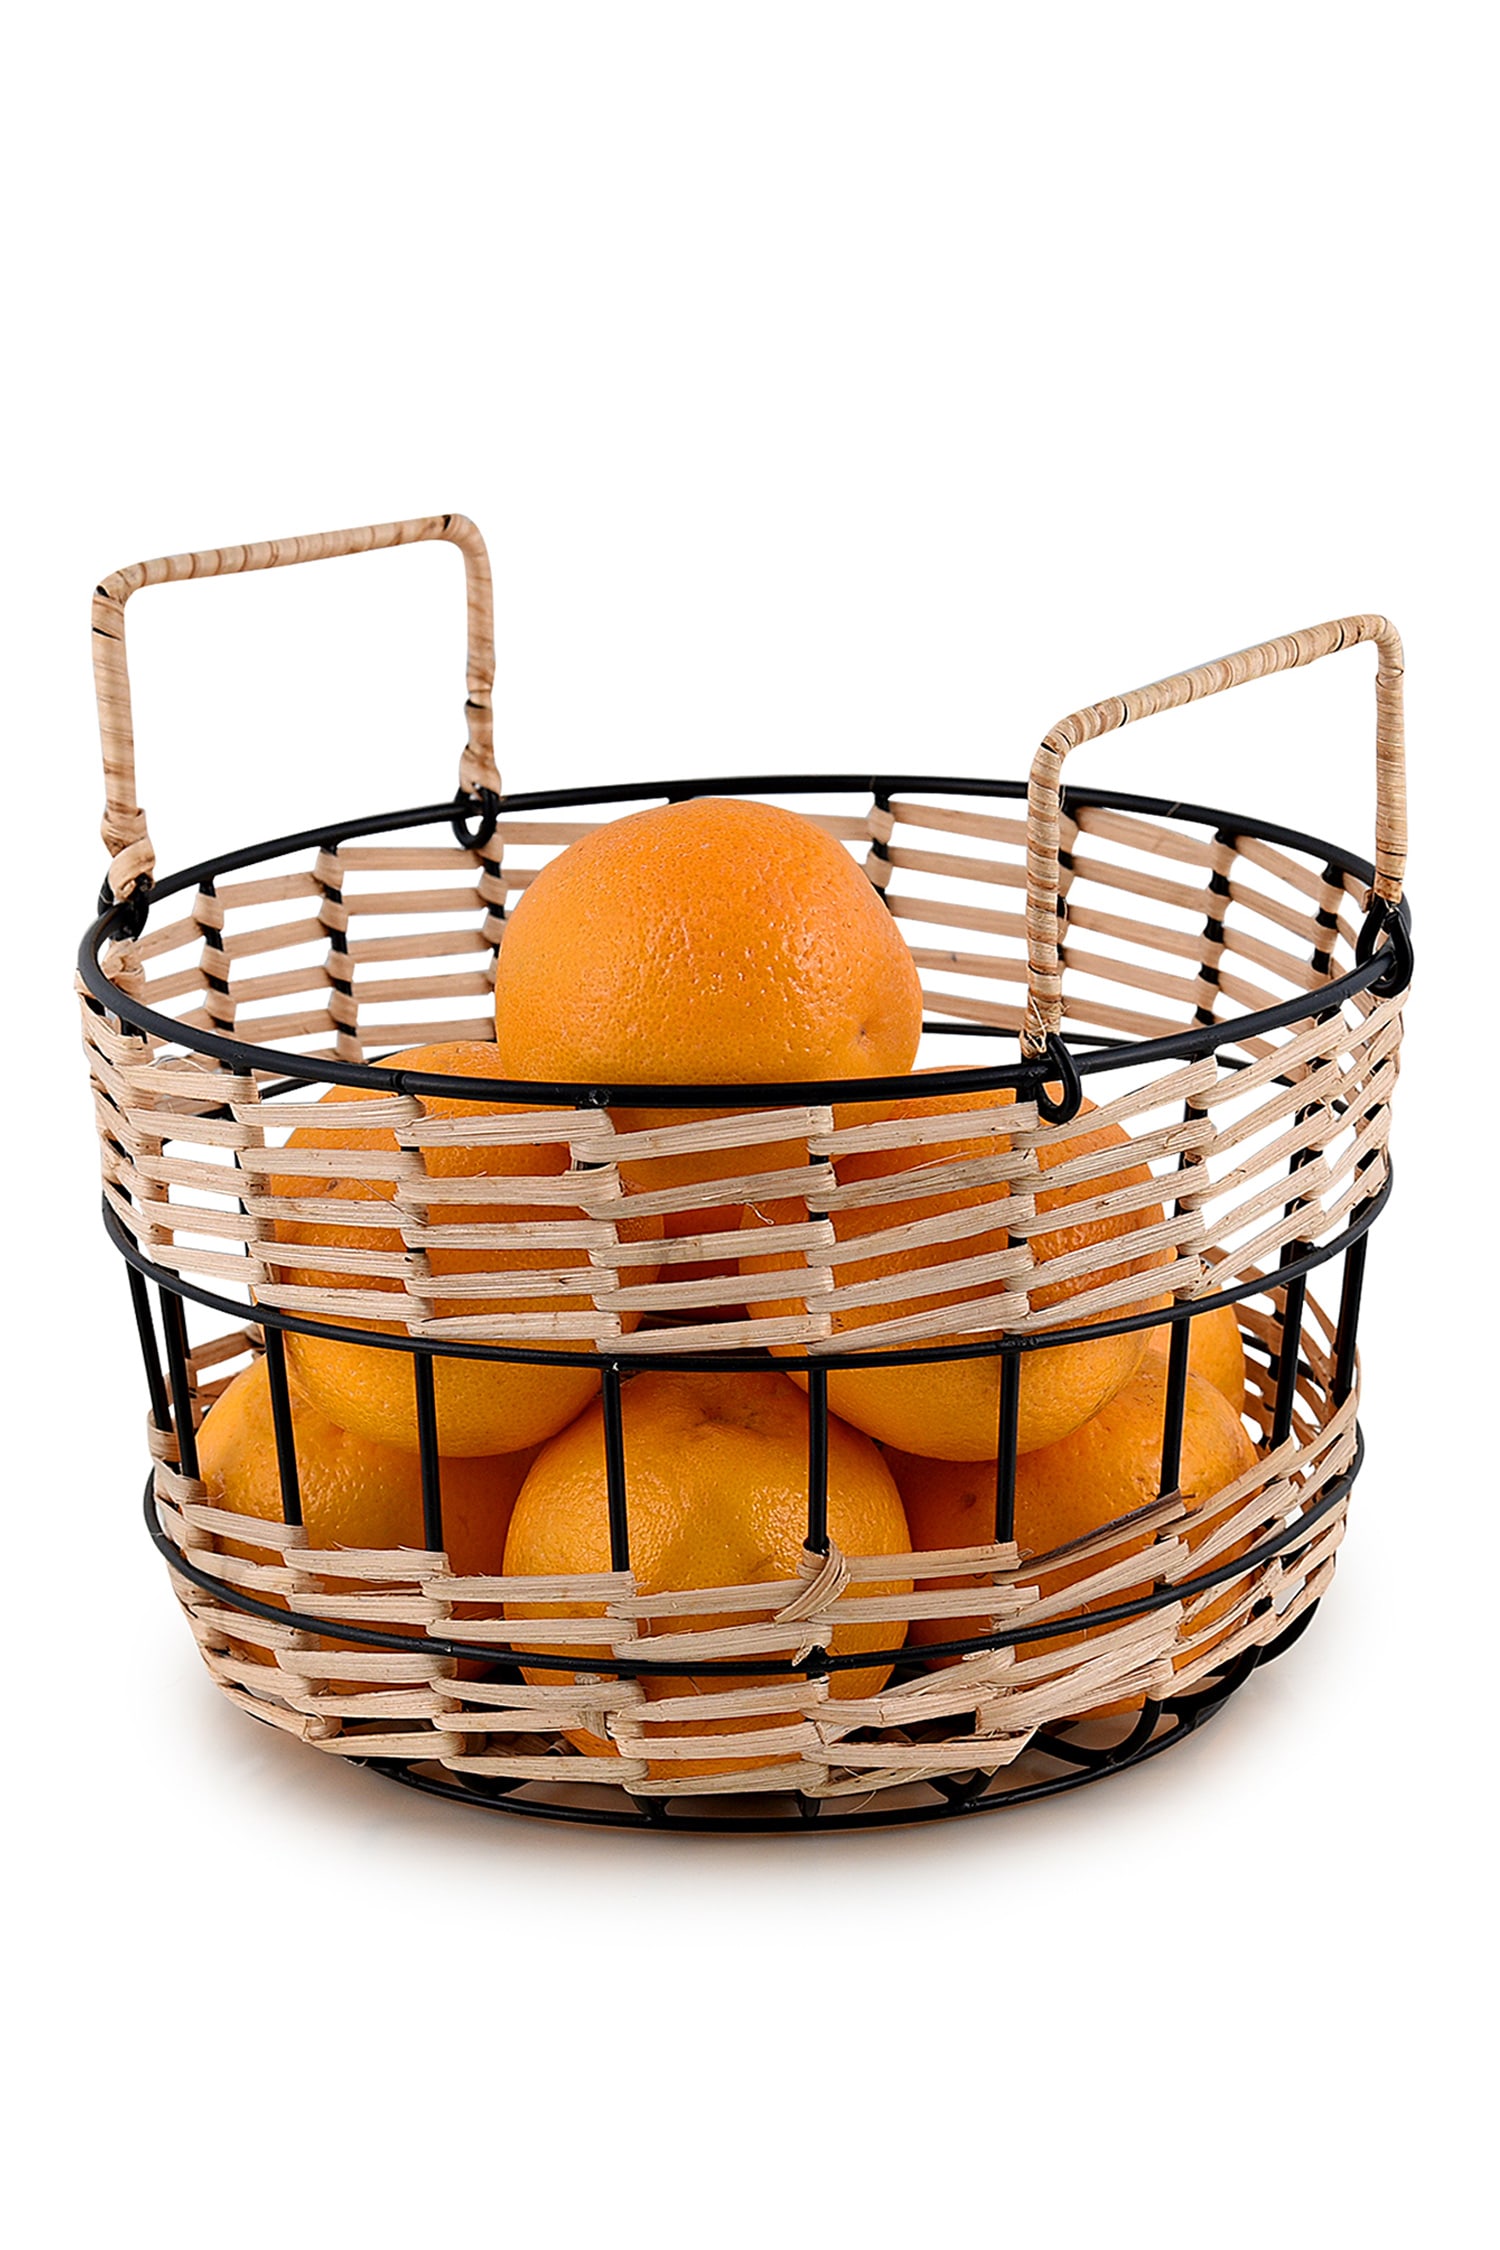 Cassia Fruit Basket